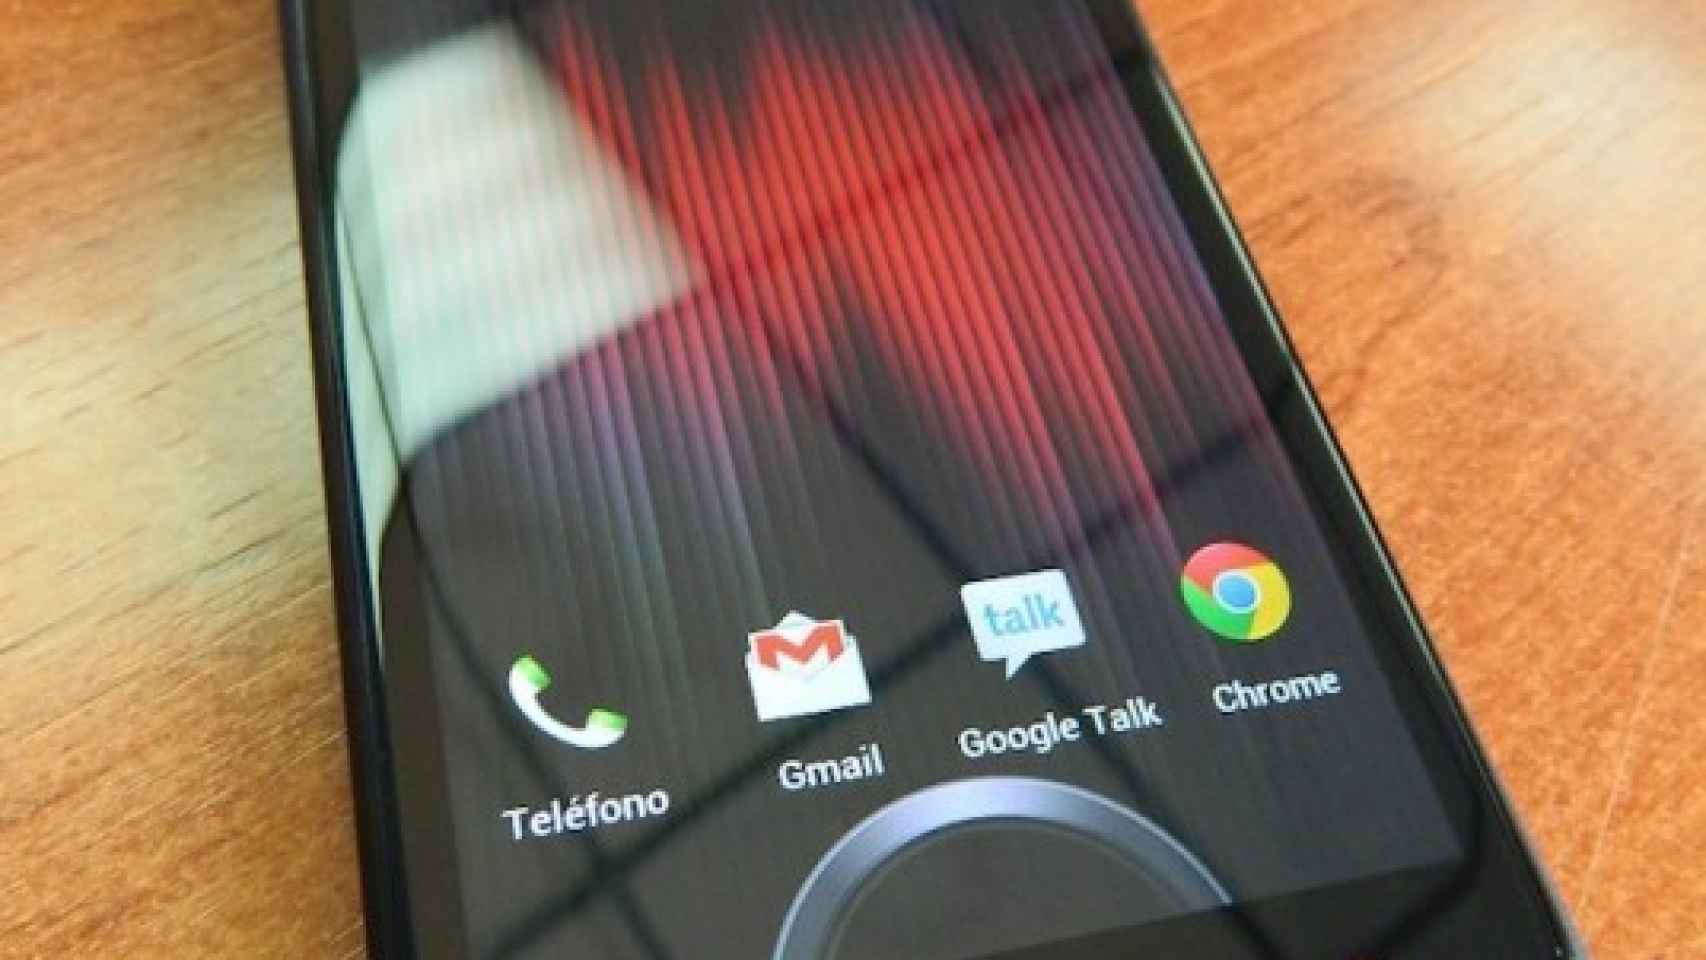 HTC One X+: Análisis completo y experiencia de uso